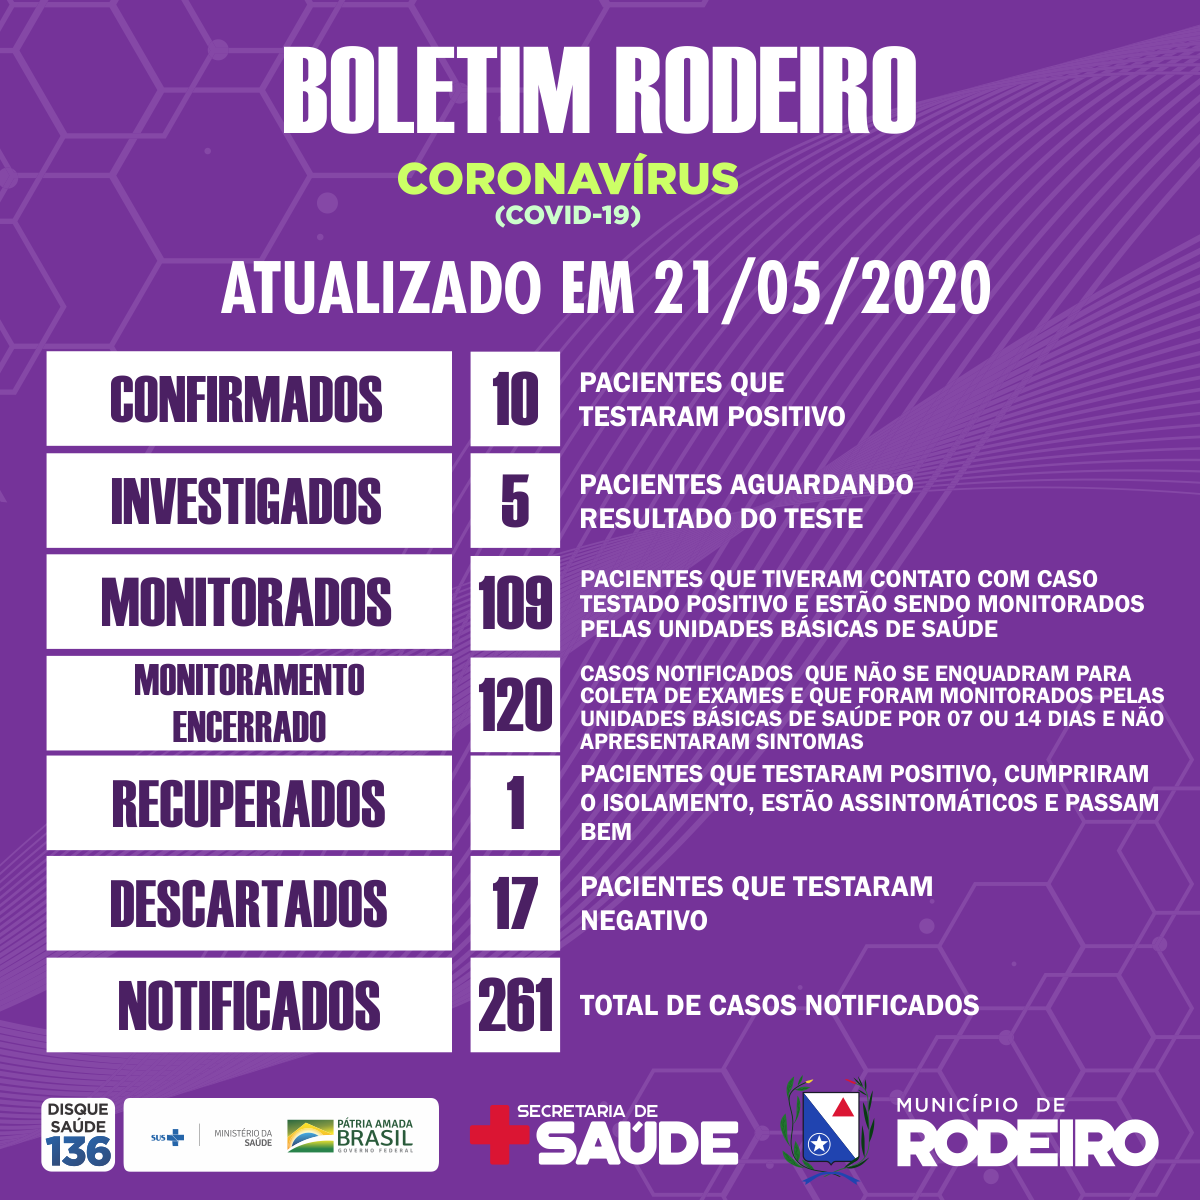 Boletim epidemiológico do Município de Rodeiro, atualização sobre coronavírus em 21/05/2020